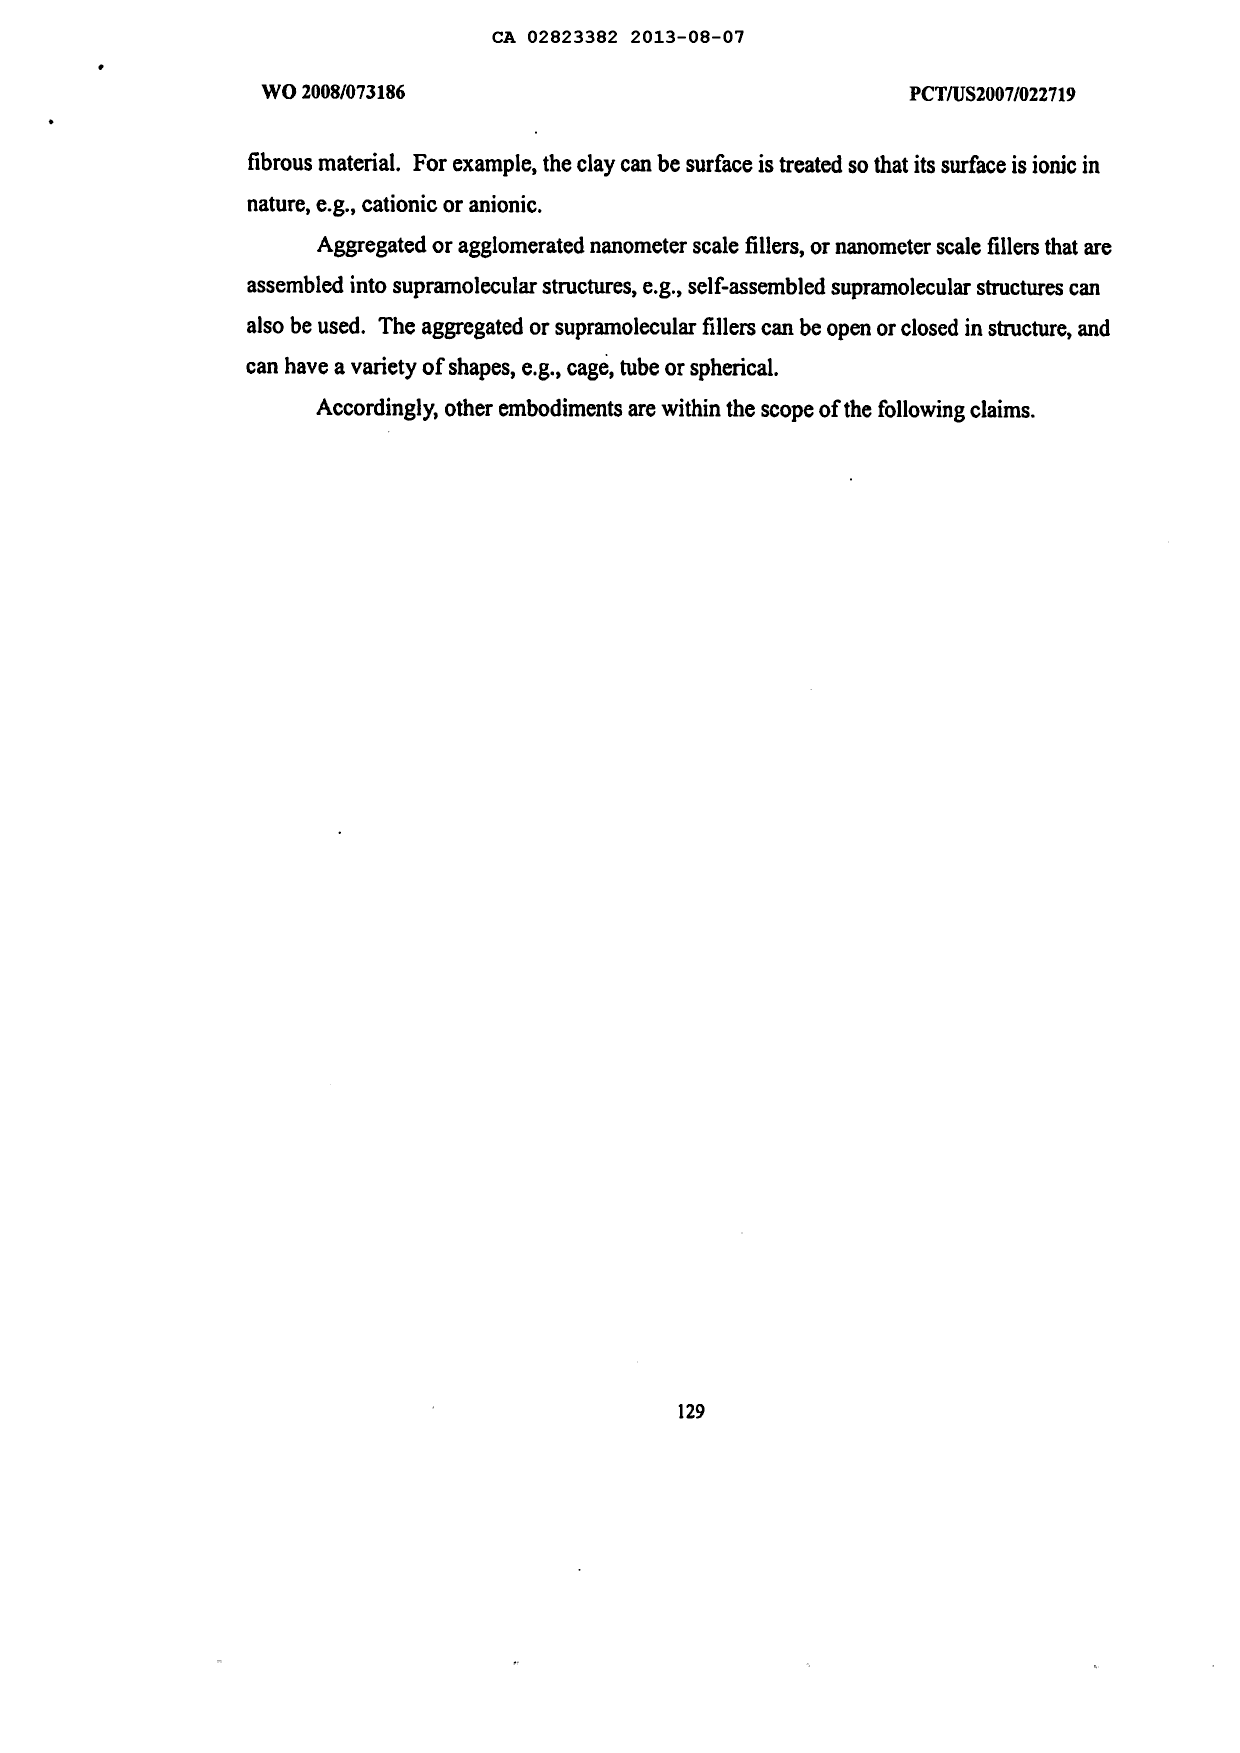 Document de brevet canadien 2823382. Description 20131224. Image 130 de 130